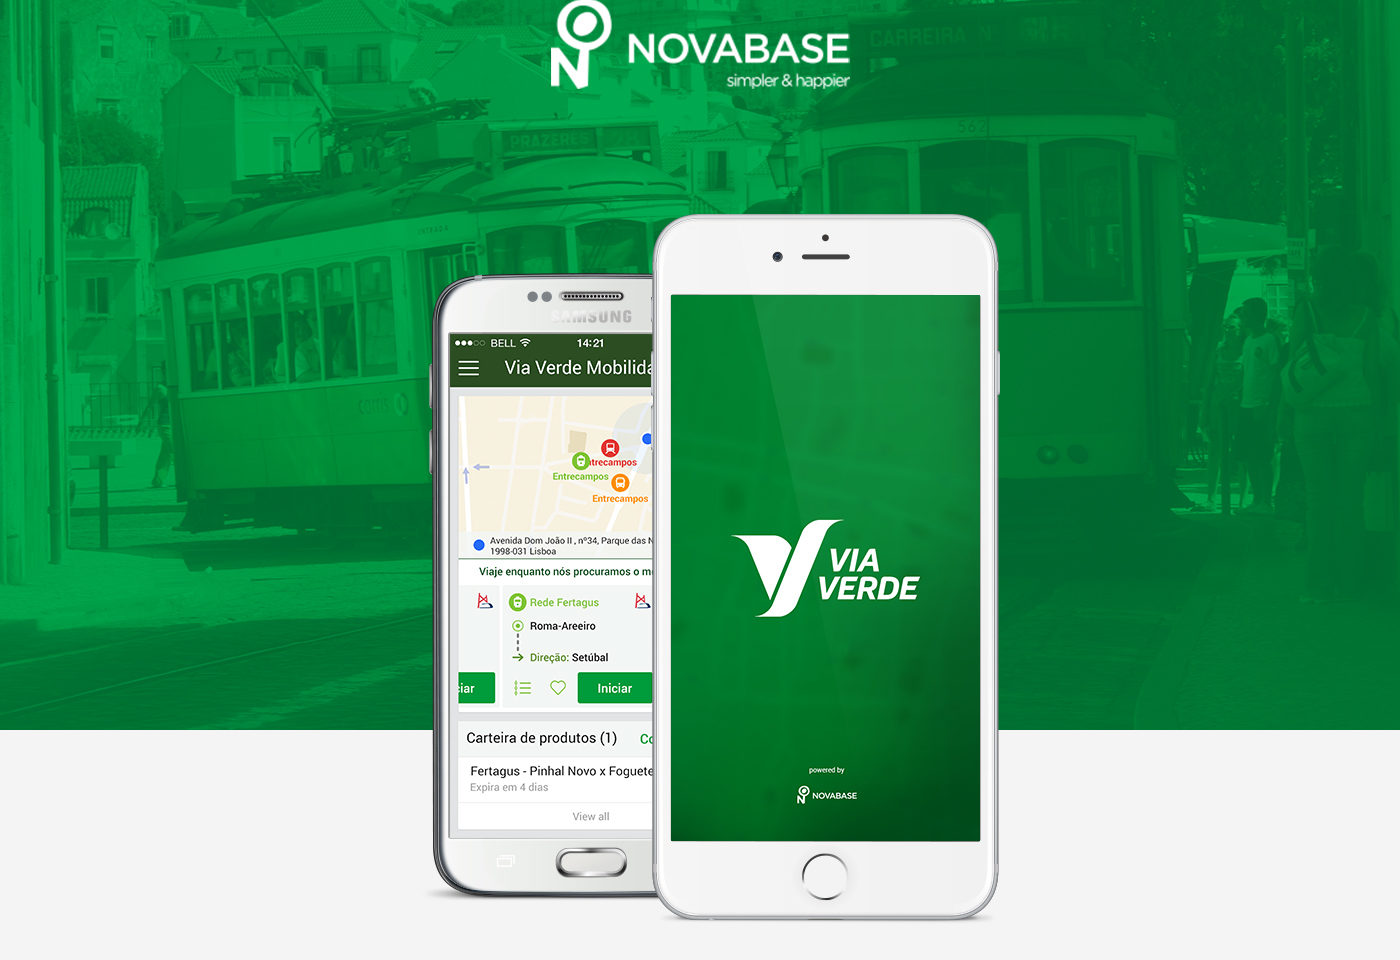 Via Verde Mobilidade App 2018